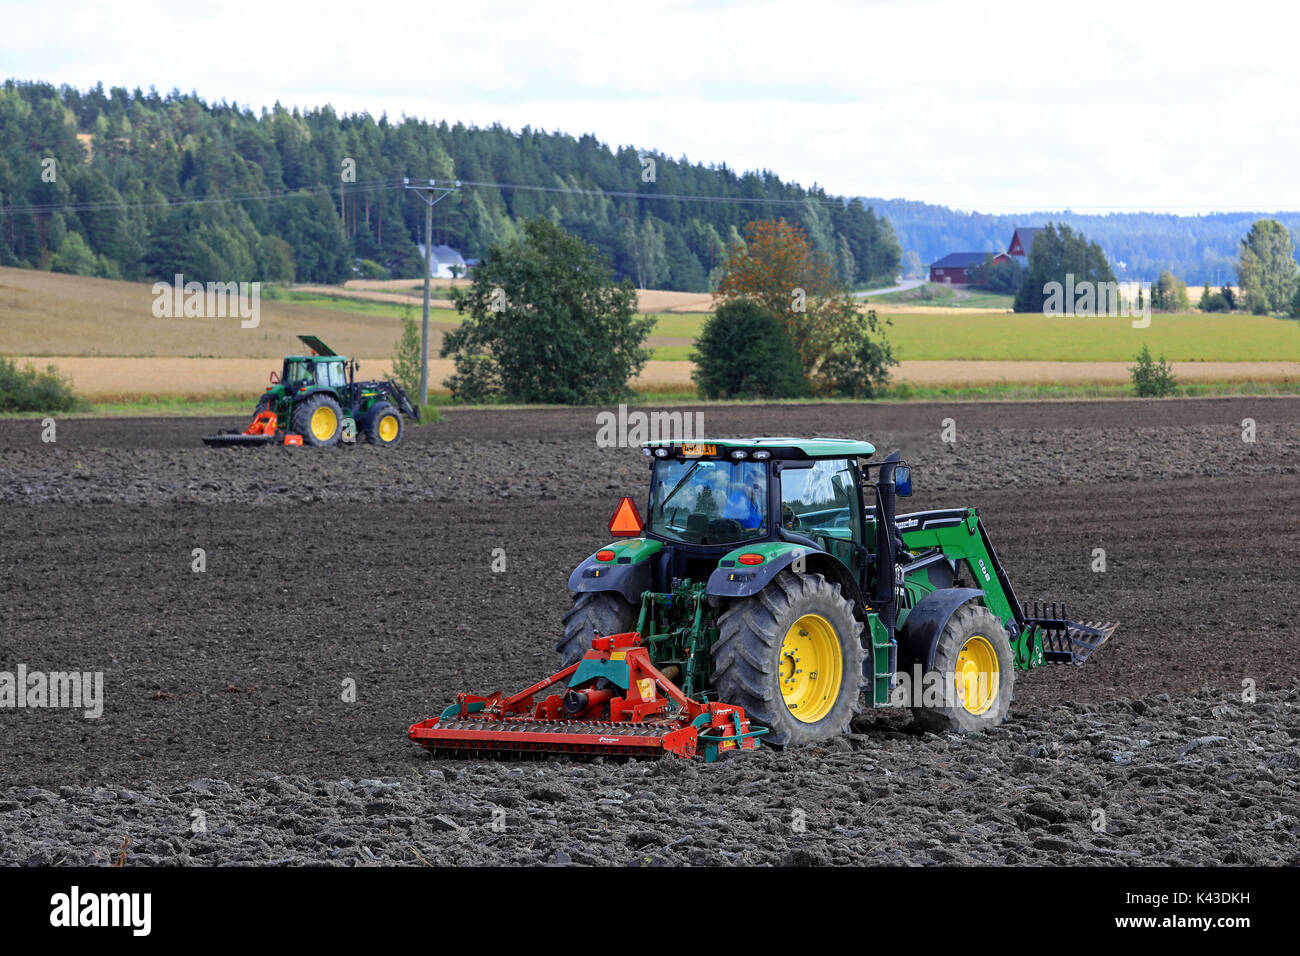 SALO, Finnland - 20. AUGUST 2017: Landwirte Feld kultivieren mit zwei John Deere Traktoren sowie Kverneland Eggen an einem schönen Tag der frühen Herbst. Stockfoto